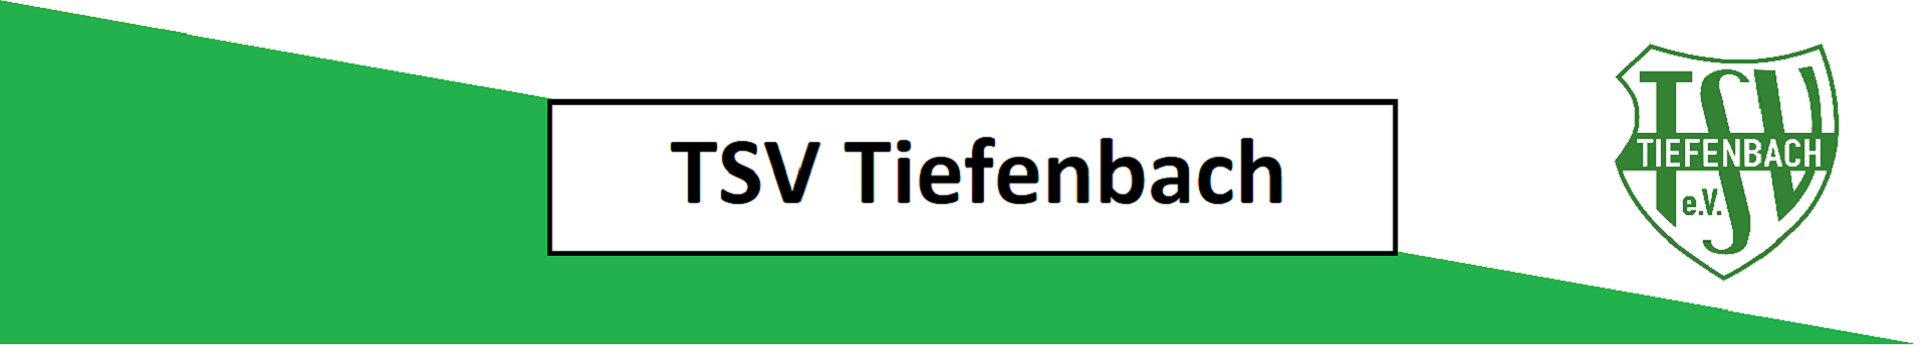 TSV Tiefenbach Title Image